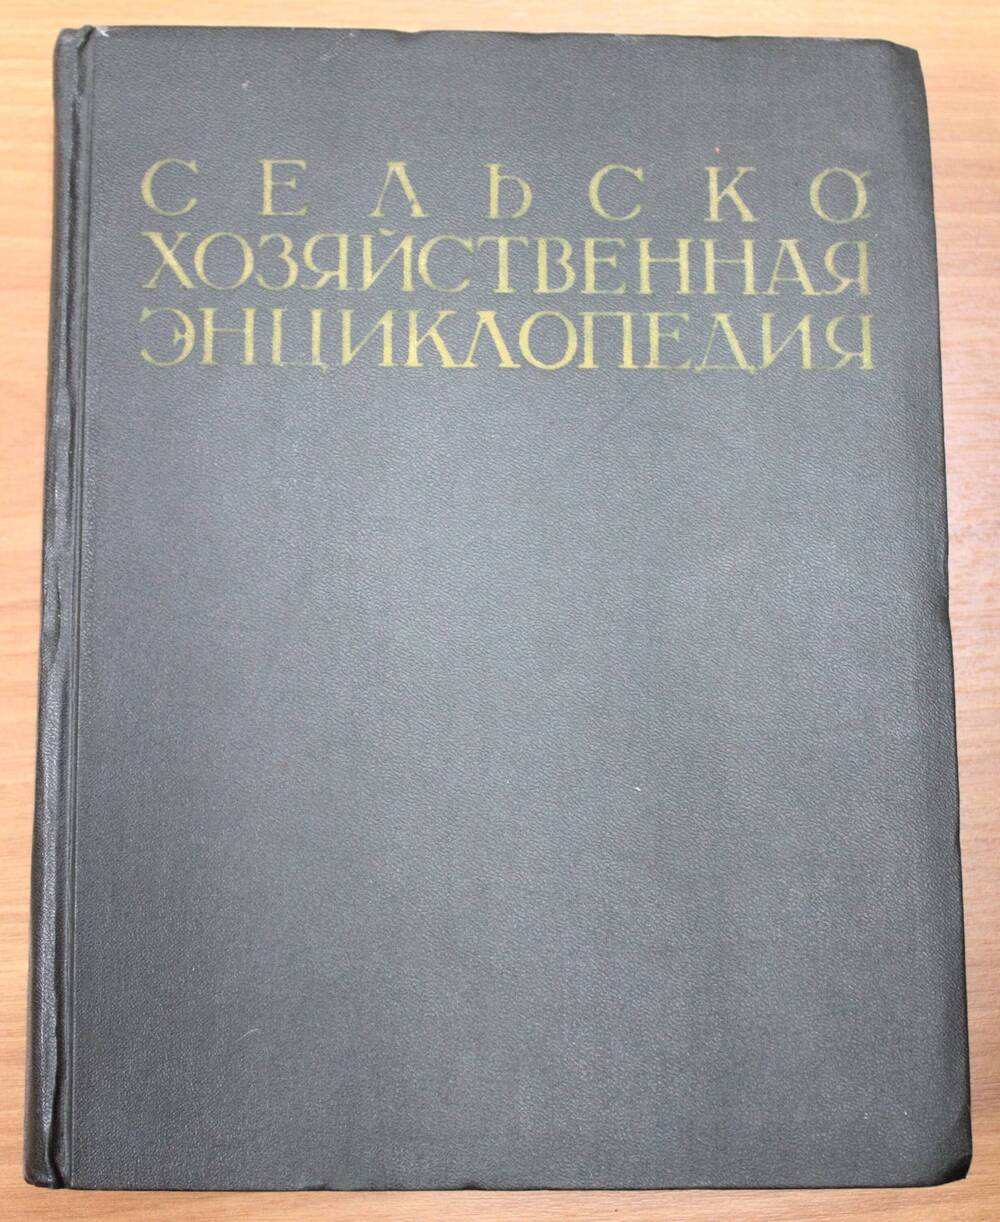 Книга. Сельскохозяйственная энциклопедия. Изд. 3-е перераб. Том 5.